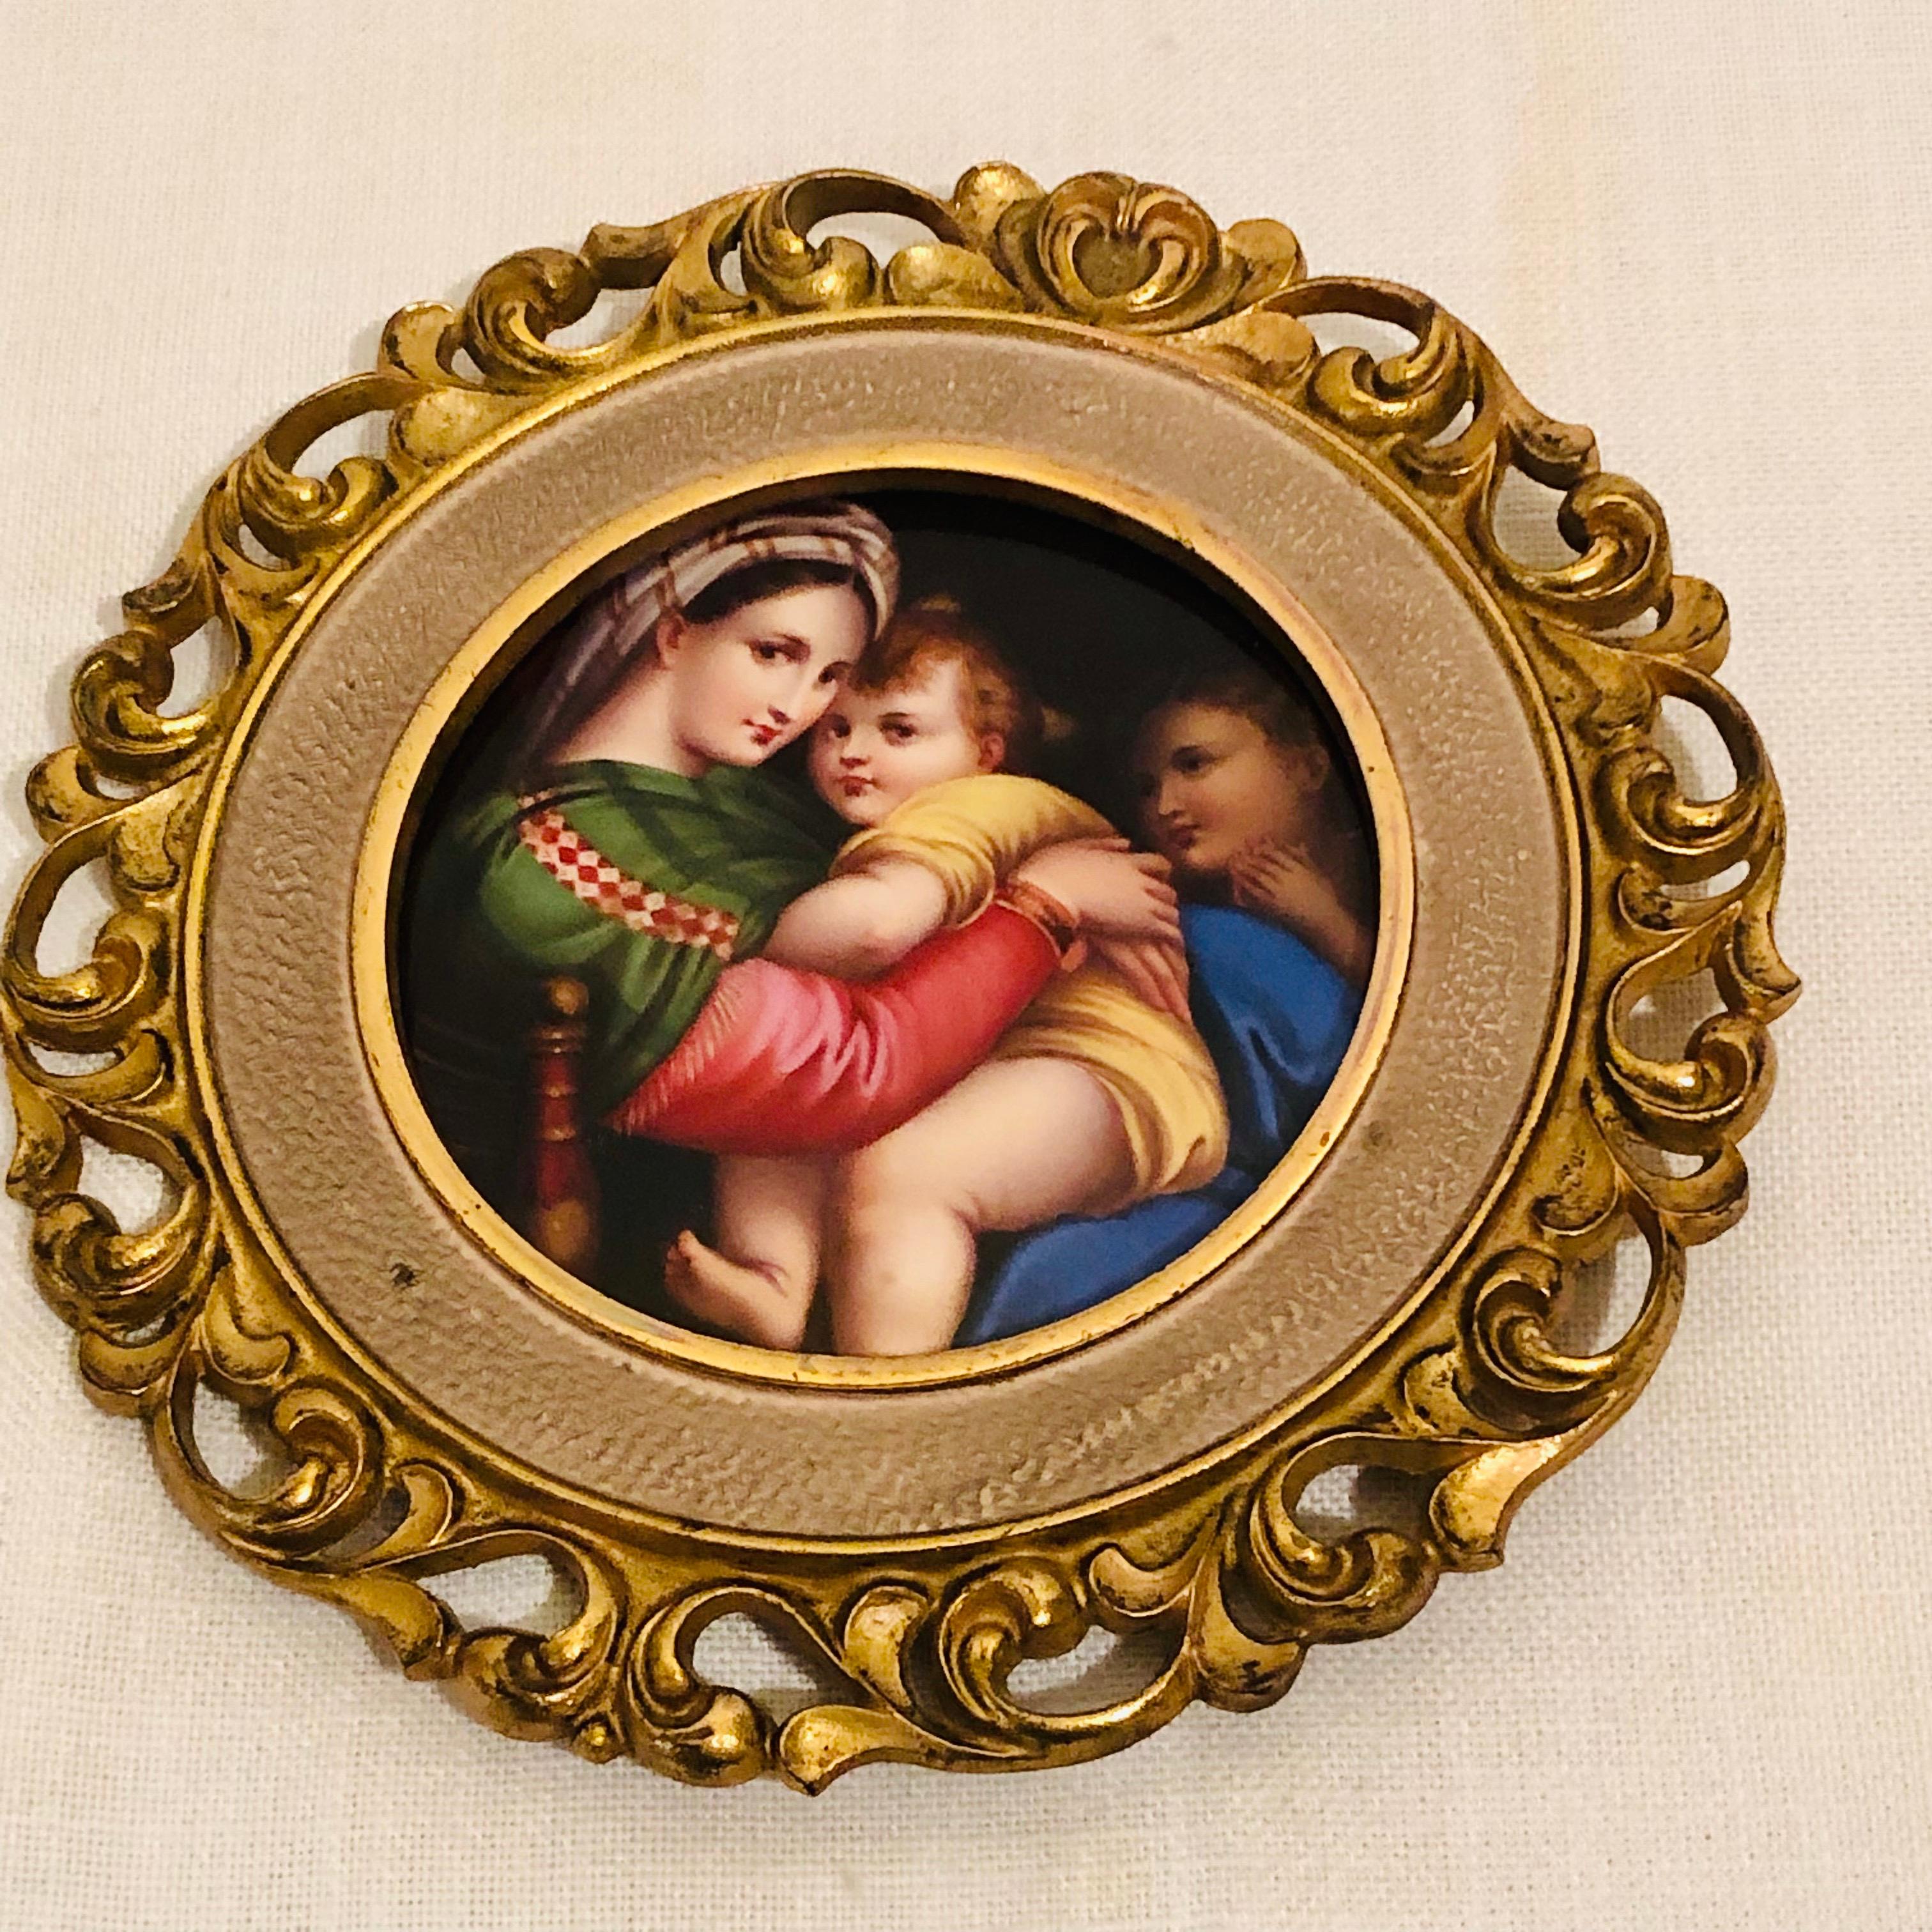 Dies ist eine wunderschön bemalte KPM-Porzellanplakette nach dem berühmten Gemälde der Madonna vom Stuhl oder Madonna della Sedia von Raphael, das ursprünglich 1513-1514 gemalt wurde. Viele der wunderschönen und begehrten KPM-Plaketten wurden von